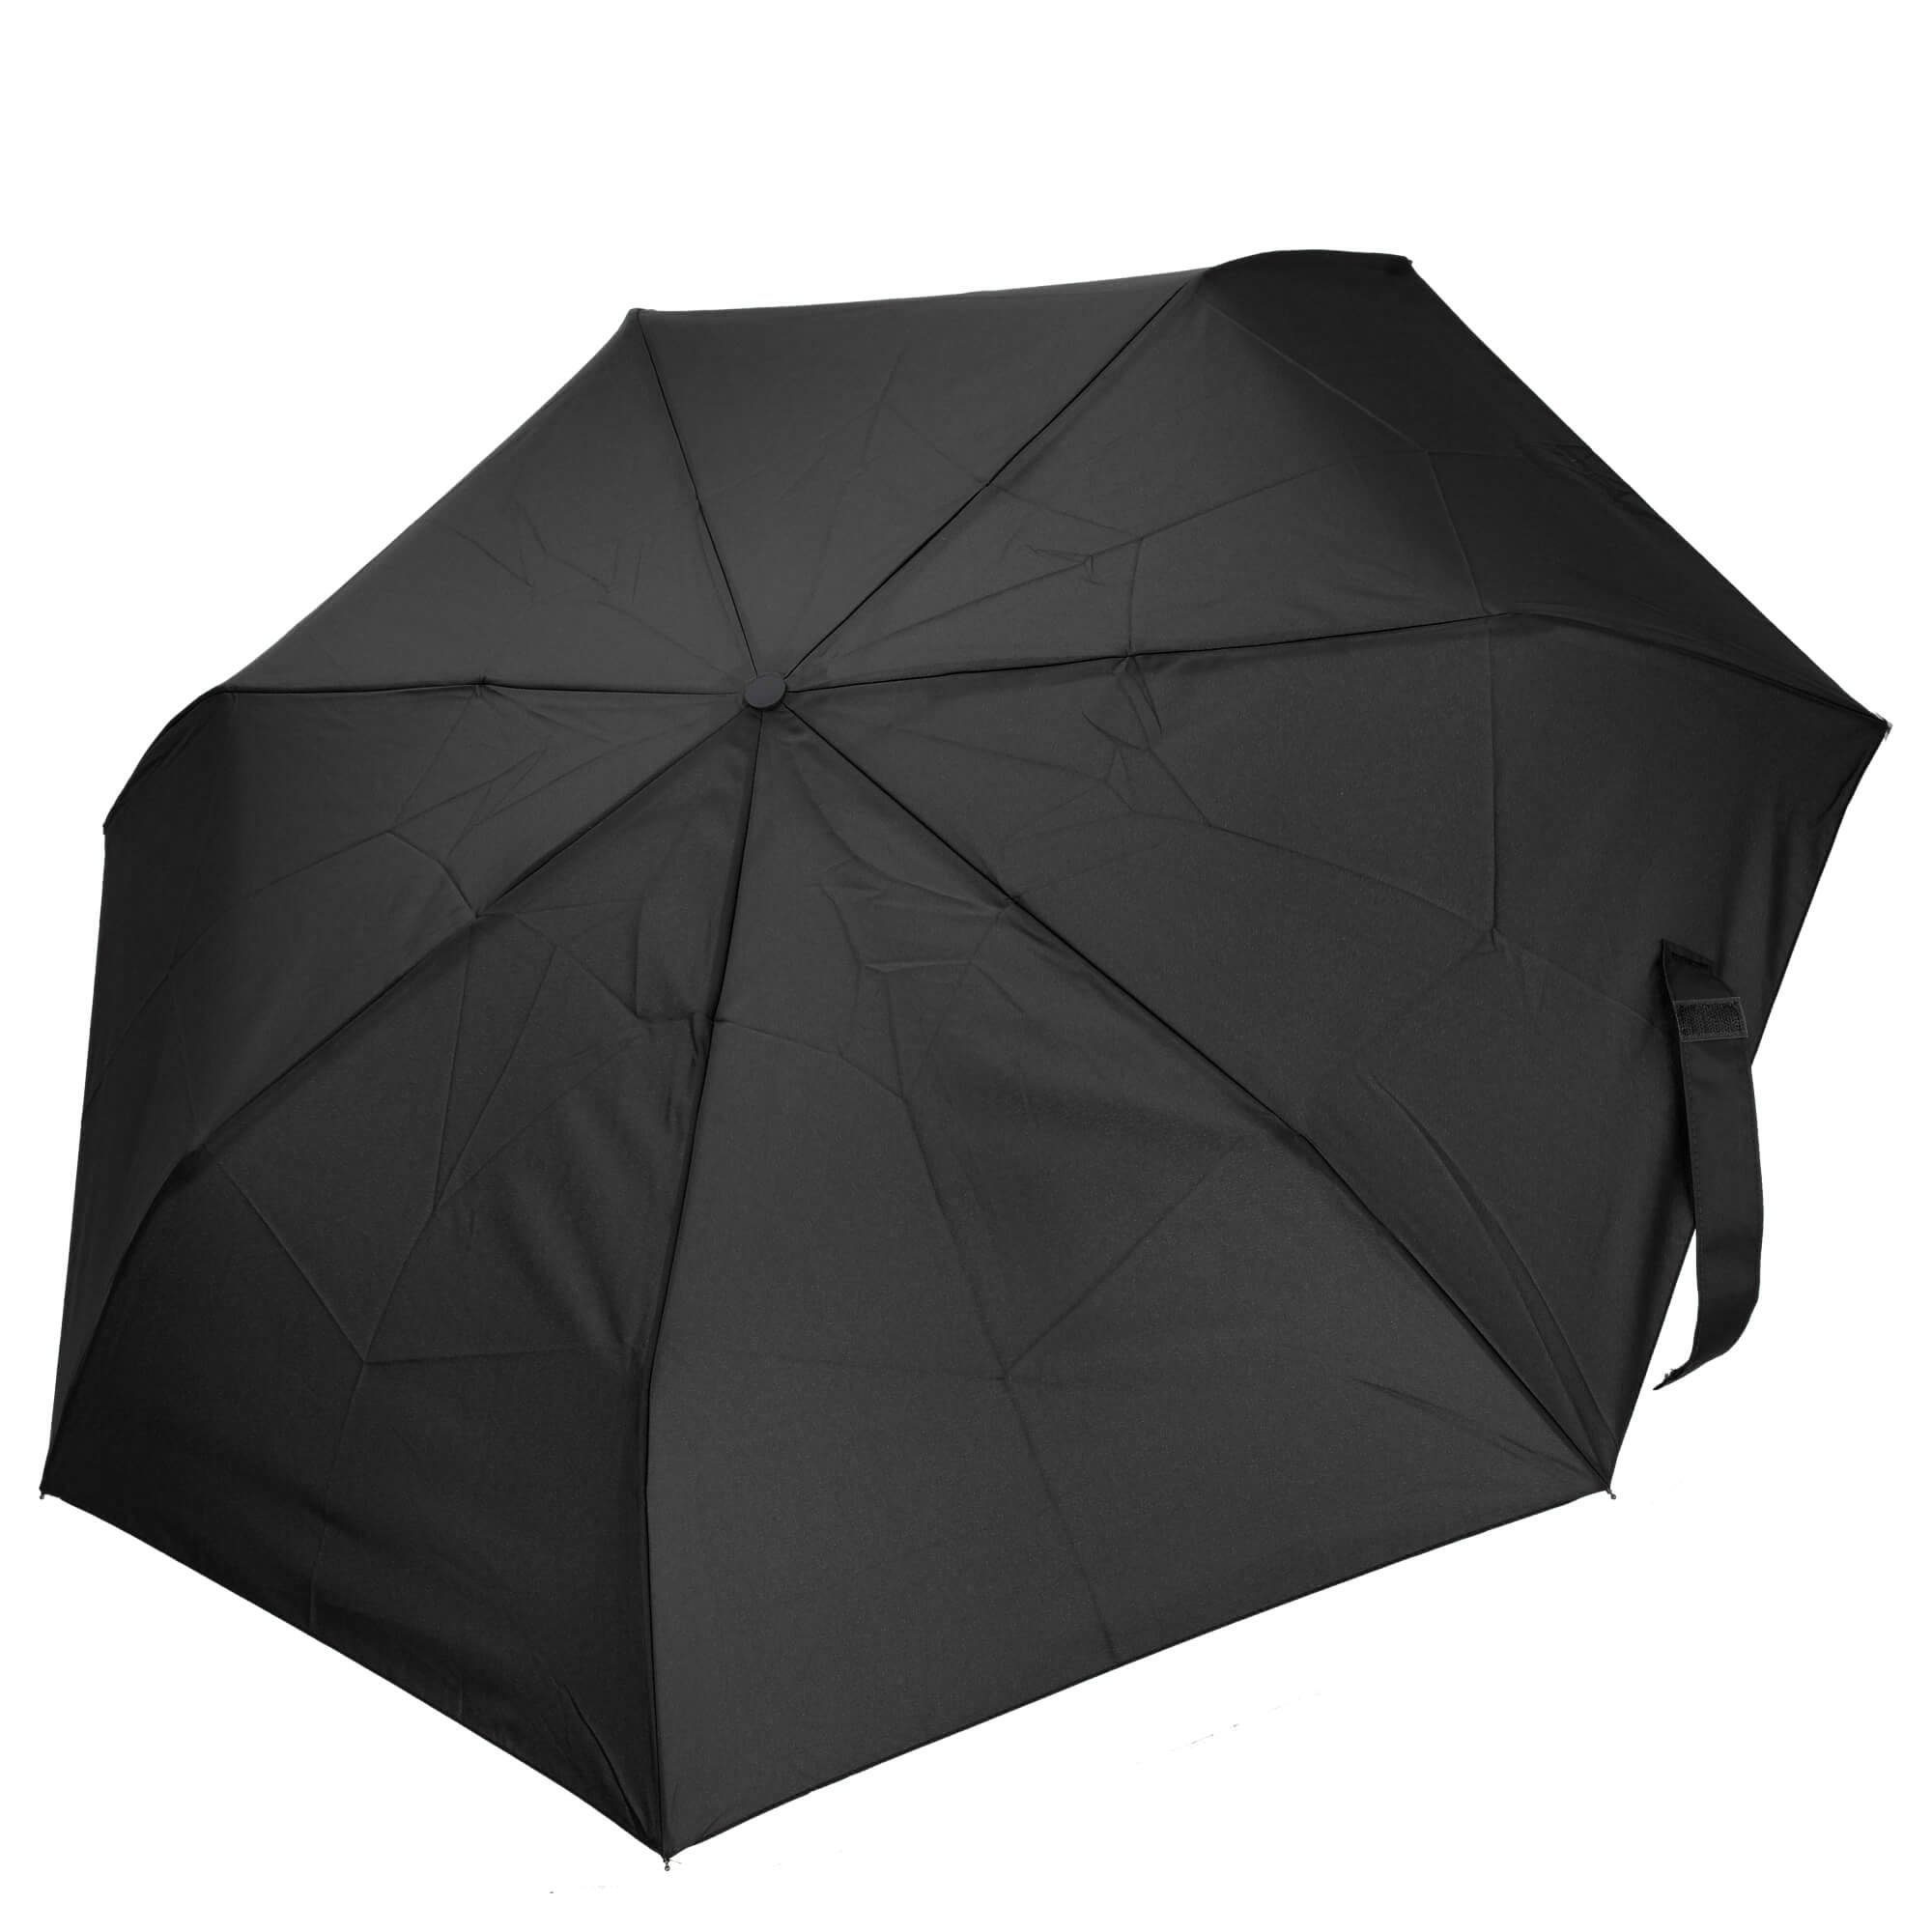 THE BRIDGE Taschenregenschirm Ombrelli Regenschirm black 96 cm 